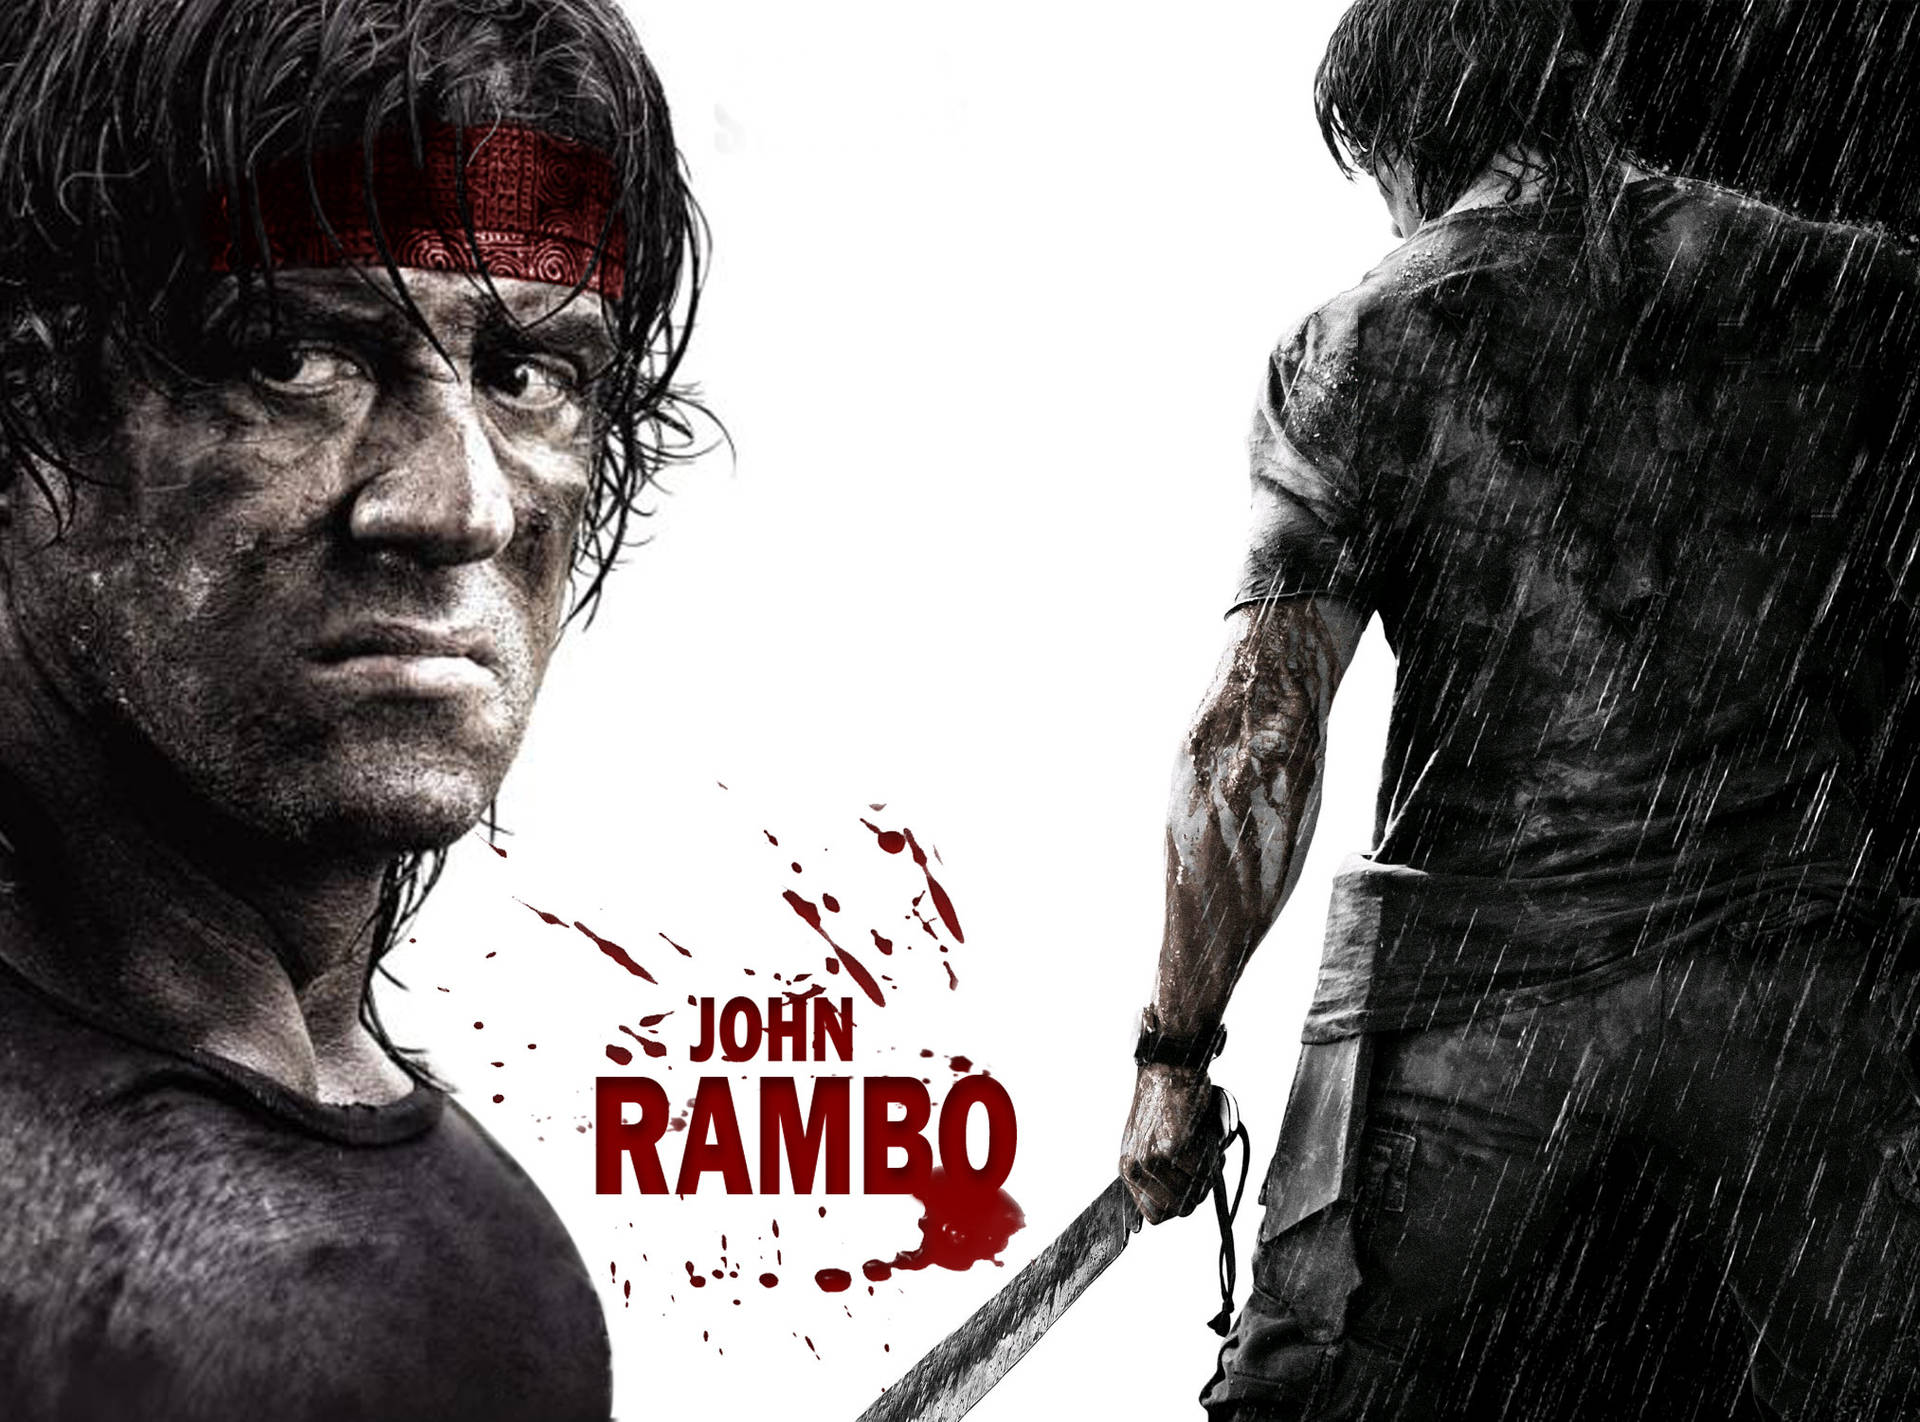 Rambo 2008 Film Background